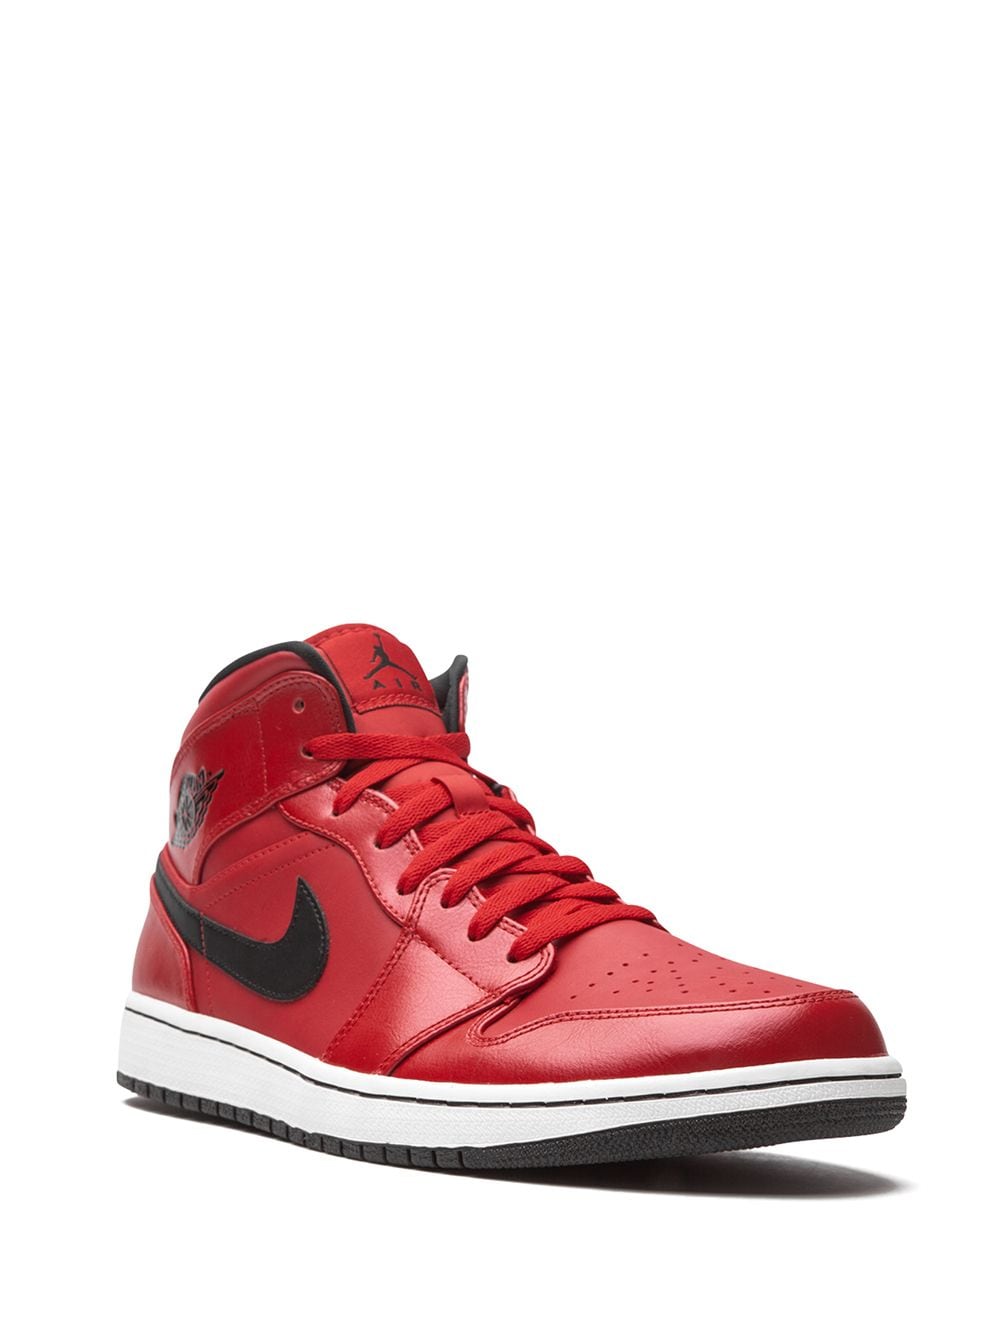 Image 2 of Jordan Air Jordan 1 Retro Mid "Gym Red" sneakers